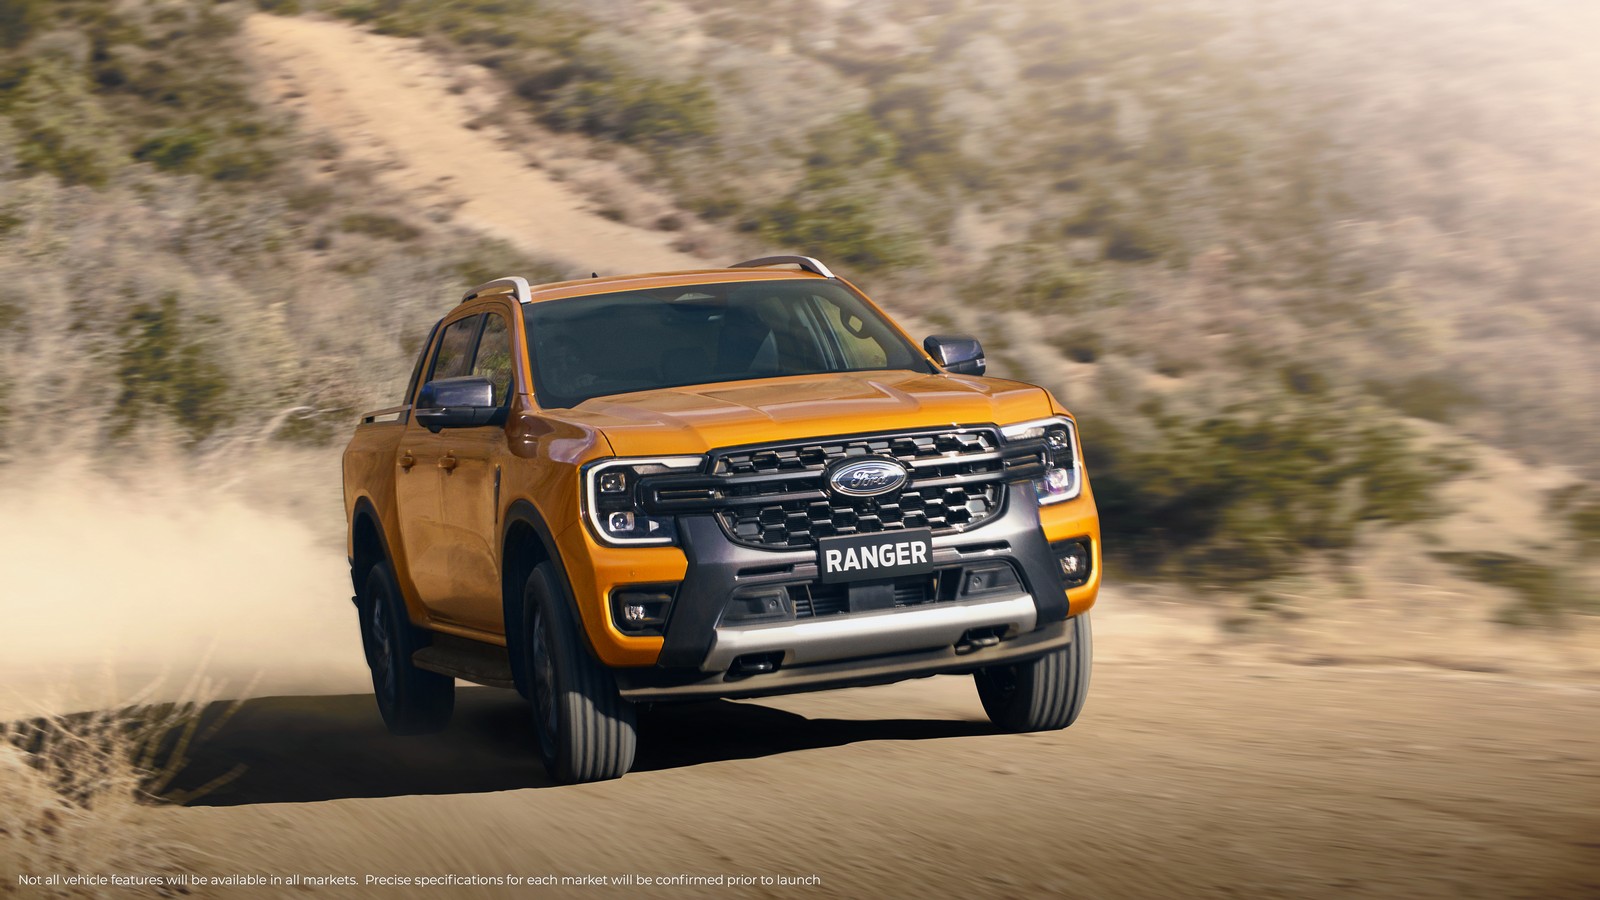 Ford ra mắt toàn cầu thế hệ Ranger mới với những cải tiến đáng giá